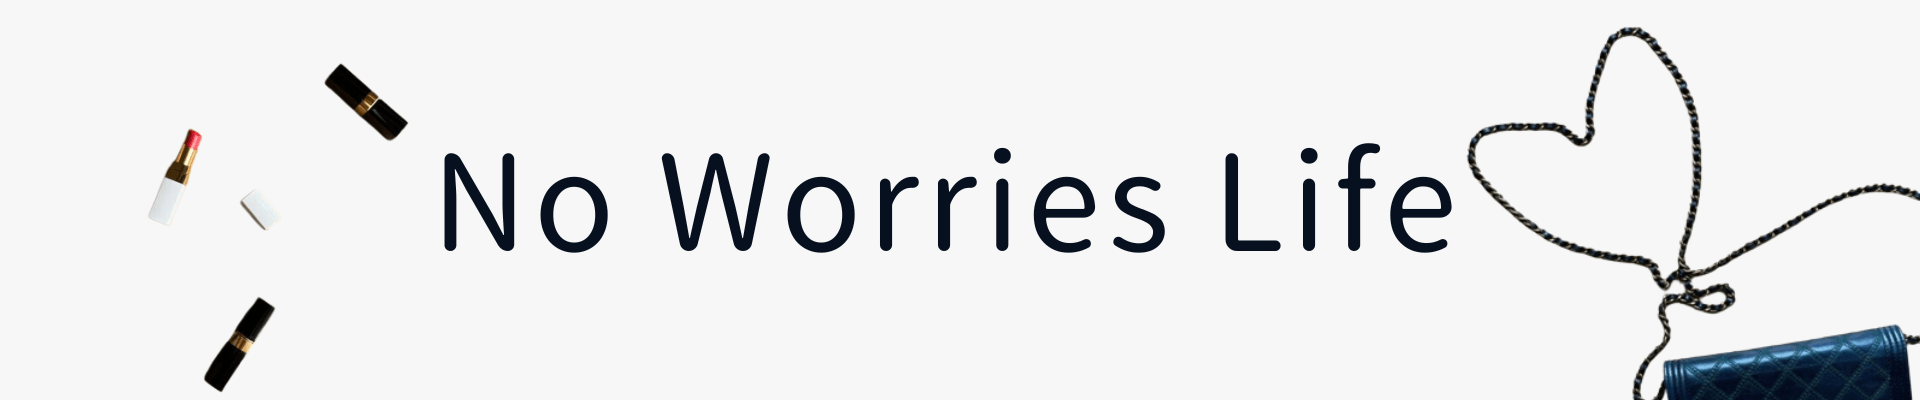 No Worries Life